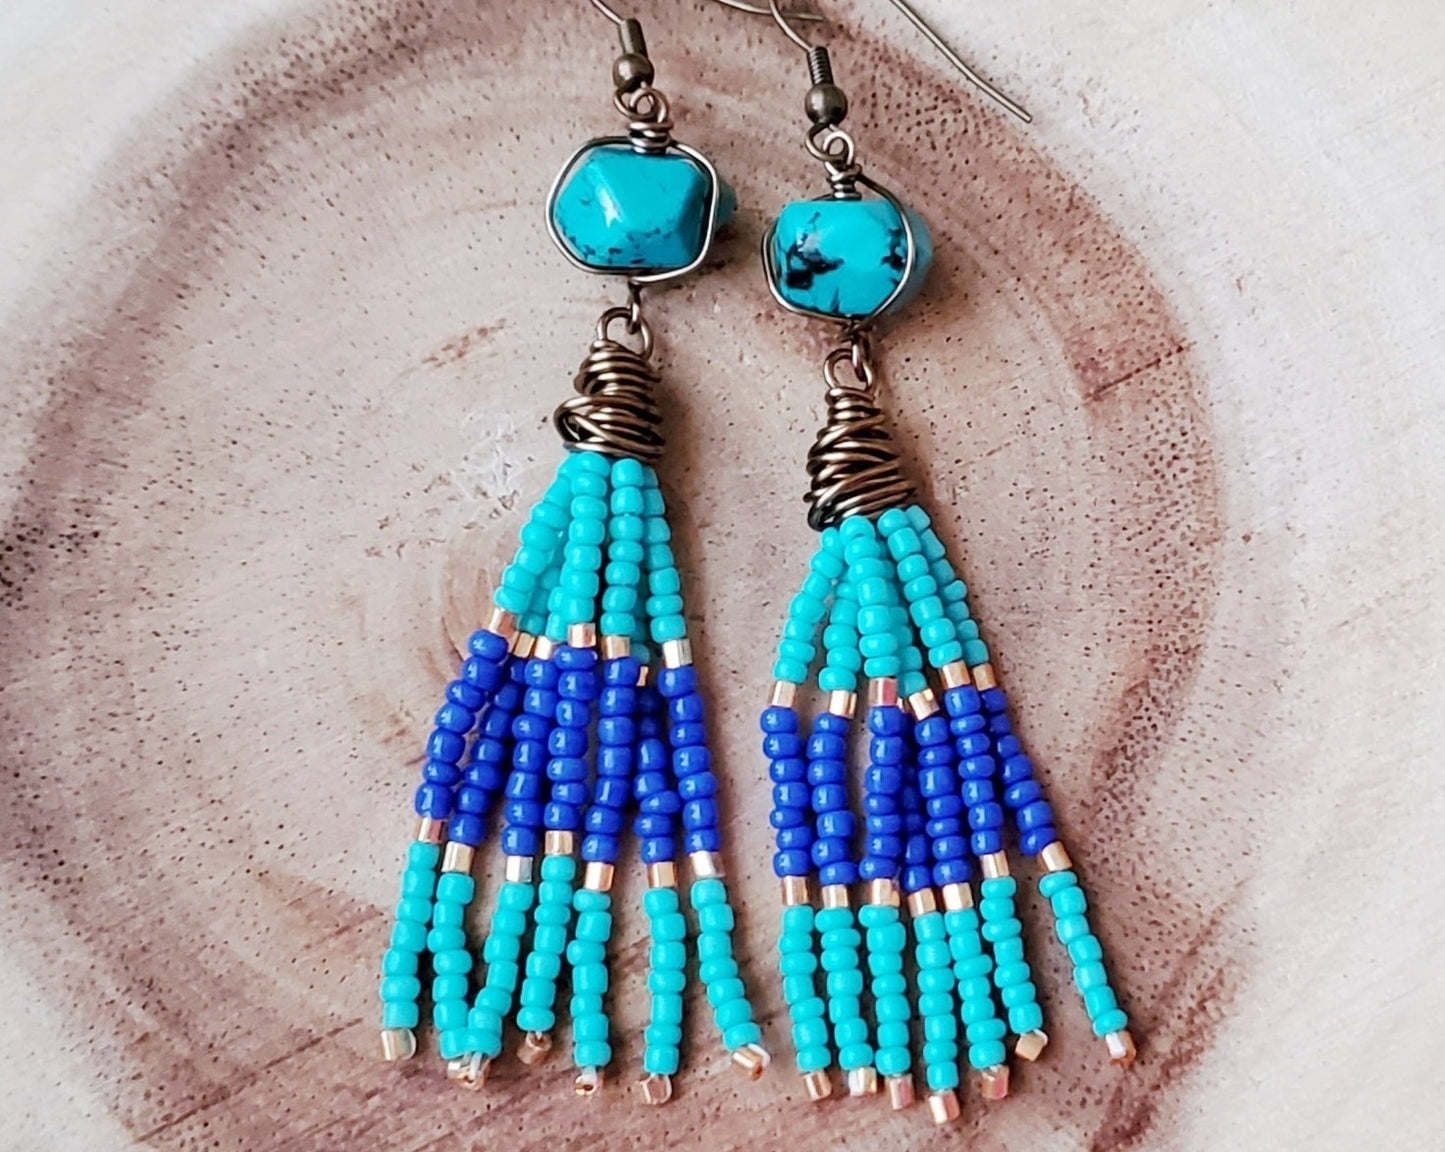 Long Beaded Turquoise Tassel Egyptian Inspired Earrings, One of a Kind Beaded Tassel Earrings